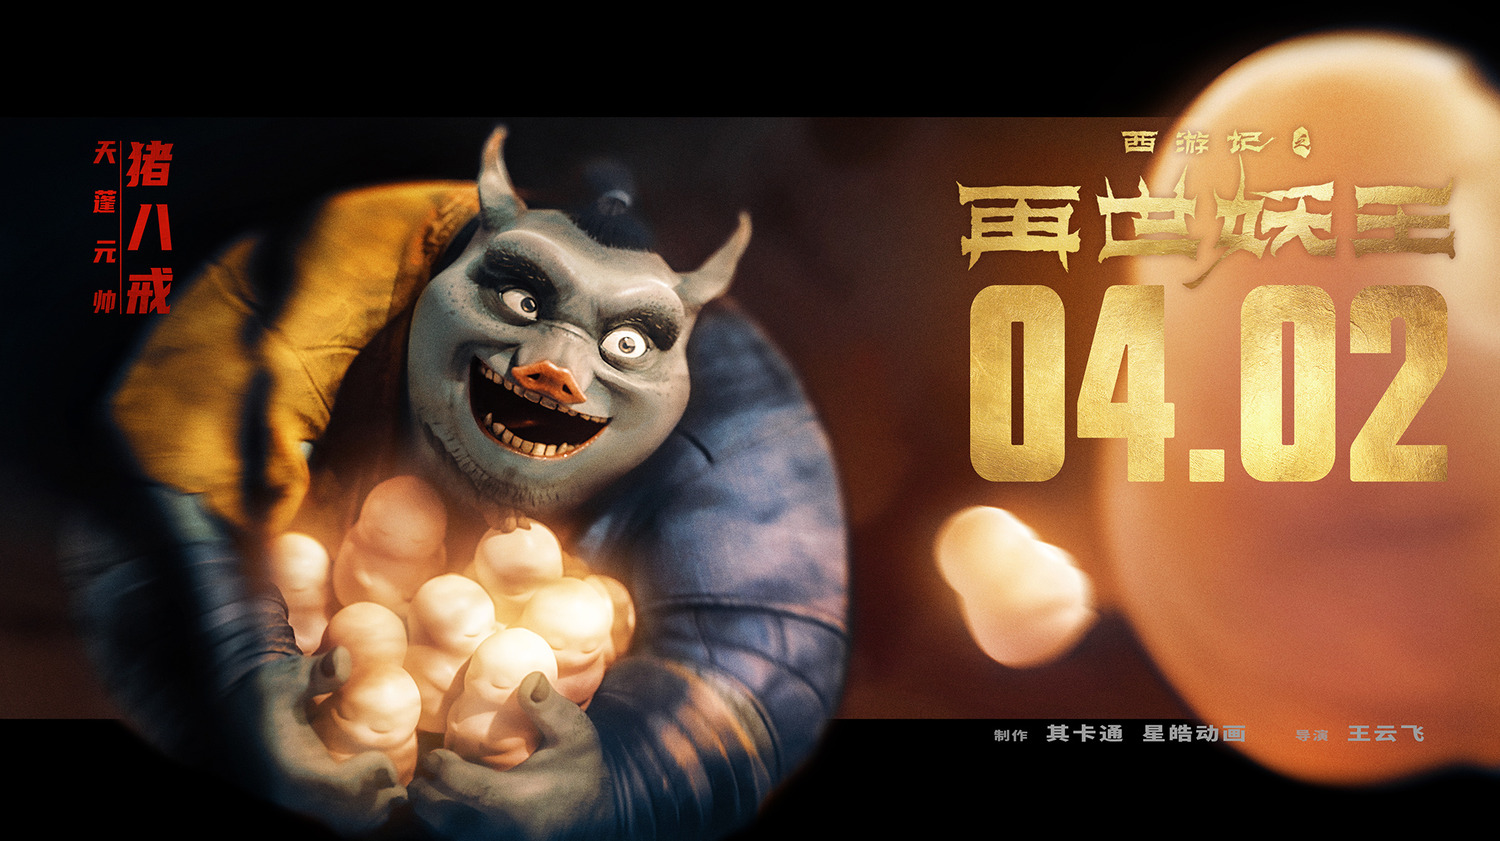 Extra Large Movie Poster Image for Xi You Ji Zhi Zai Shi Yao Wang (#15 of 21)